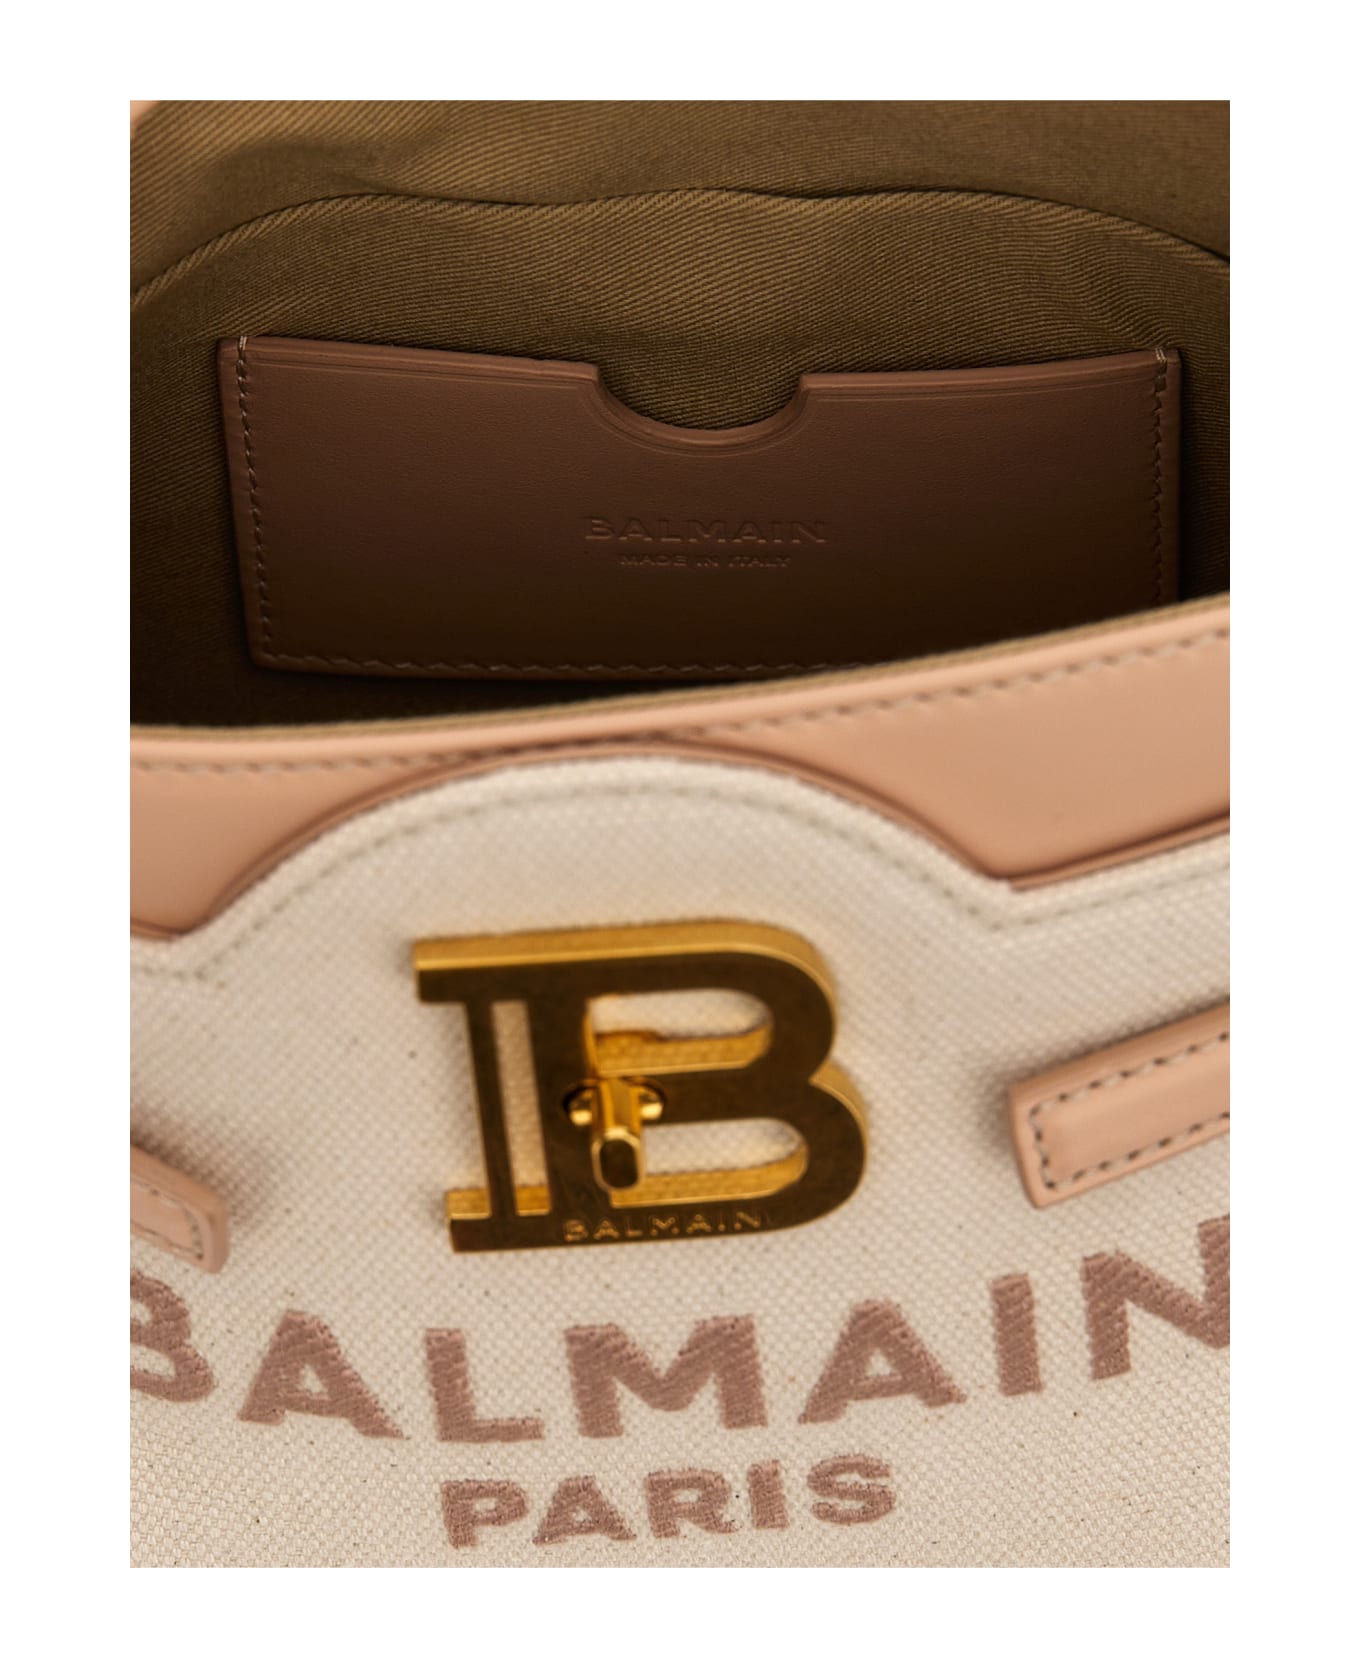 Balmain B-buzz 22 Handbag - Creme/Nude